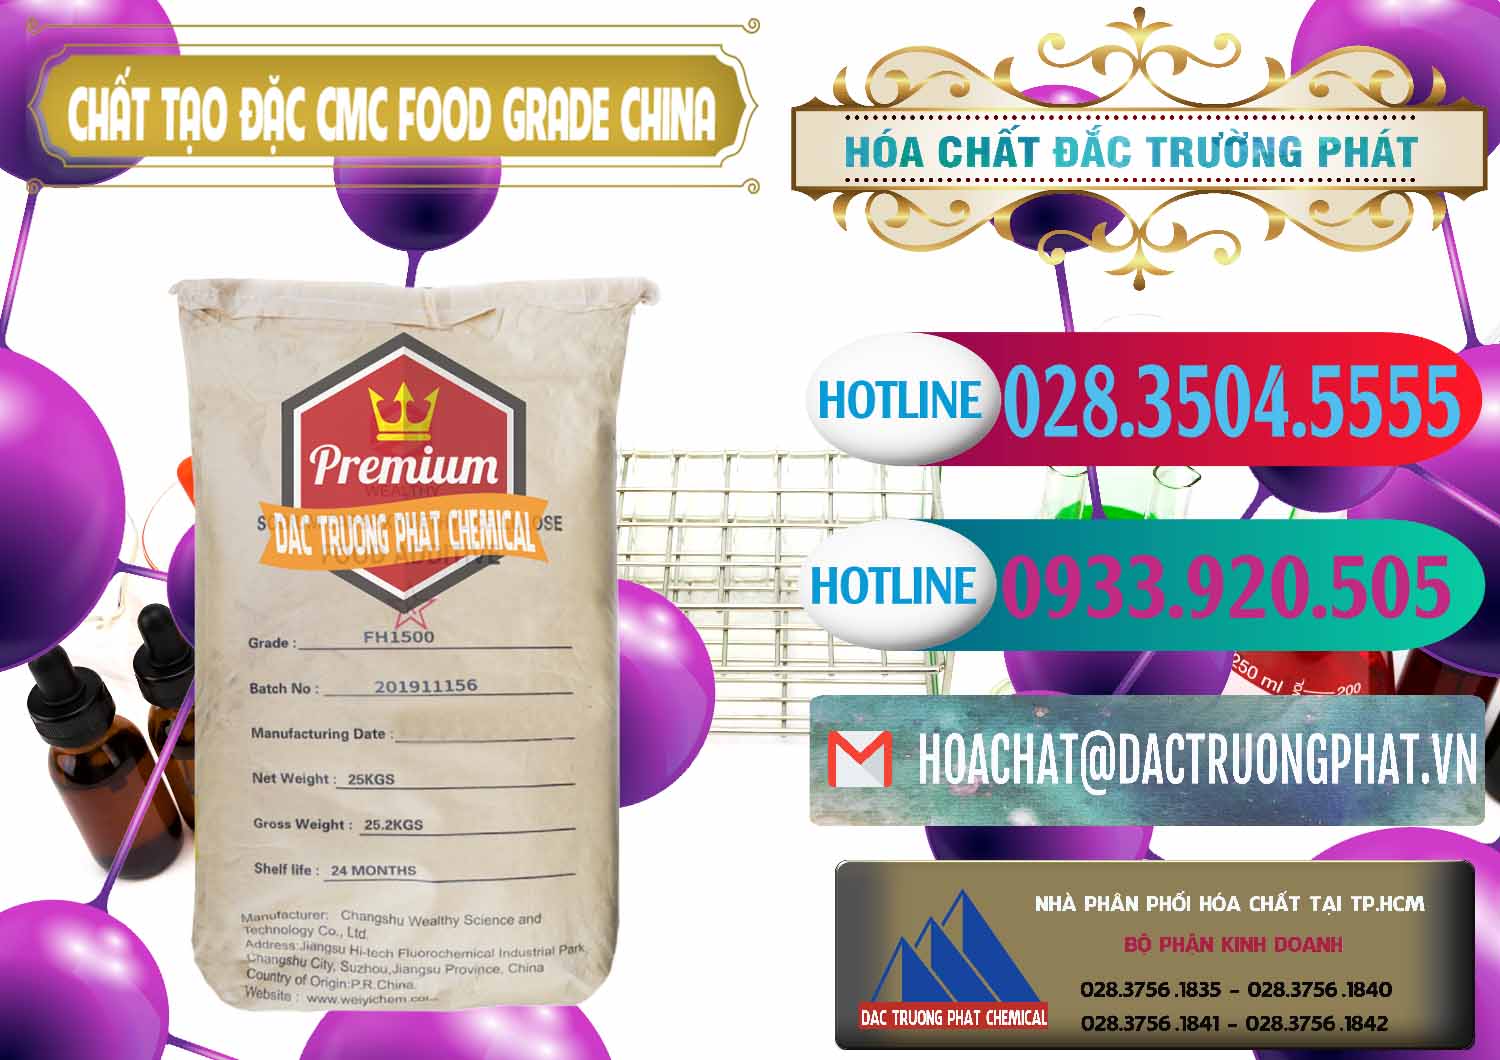 Bán ( phân phối ) Chất Tạo Đặc CMC Wealthy Food Grade Trung Quốc China - 0426 - Nơi phân phối ( nhập khẩu ) hóa chất tại TP.HCM - truongphat.vn